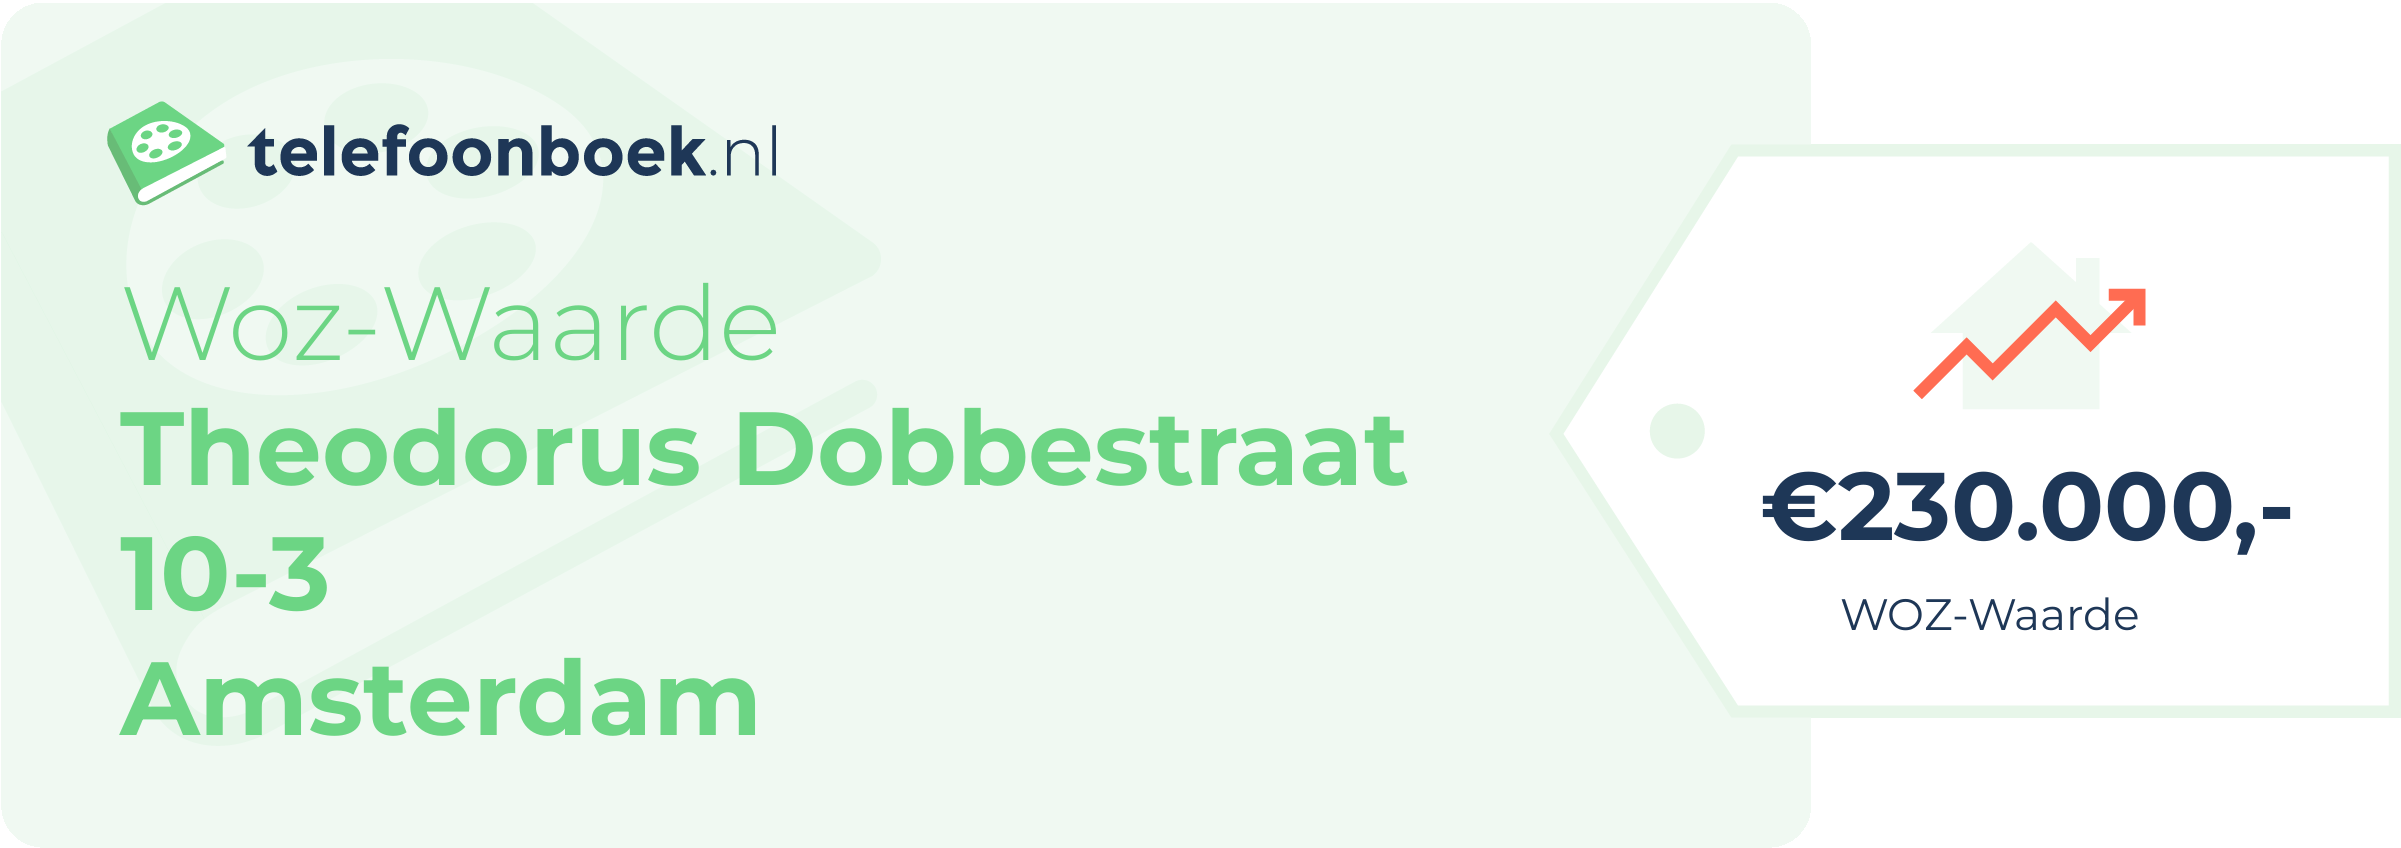 WOZ-waarde Theodorus Dobbestraat 10-3 Amsterdam